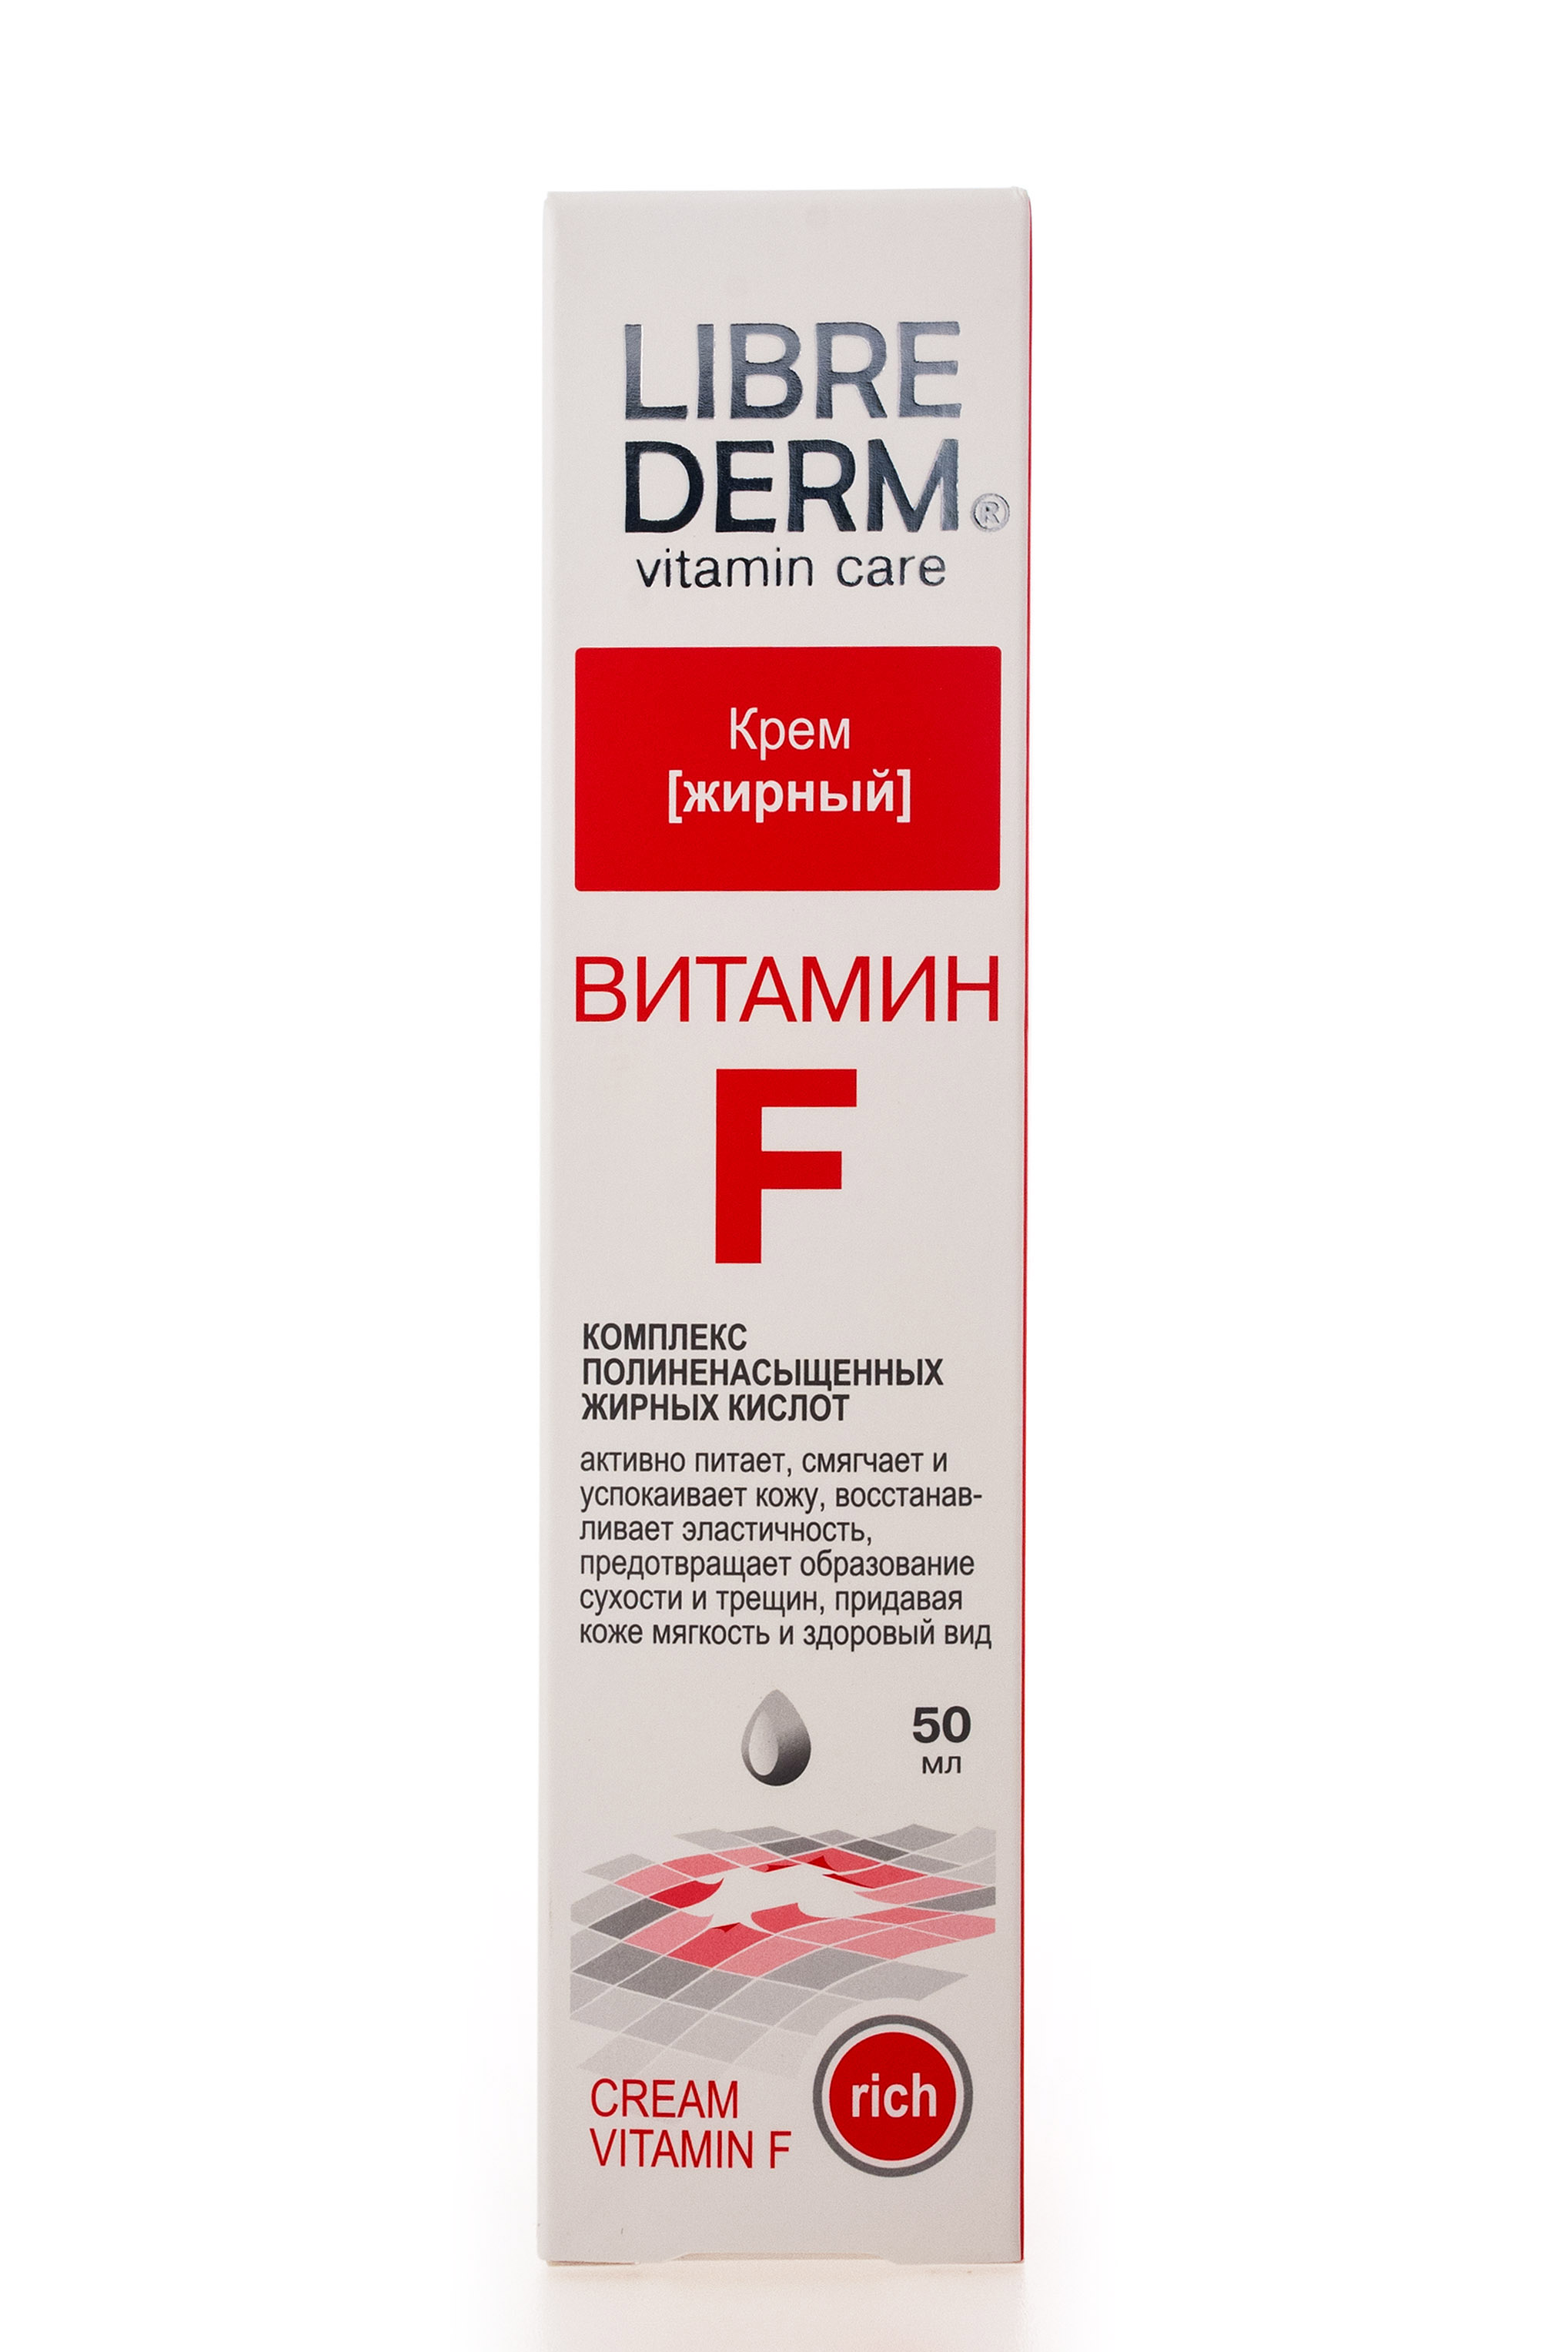 цена Librederm Крем жирный для очень сухой и чувствительной кожи, 50 мл (Librederm, Витамин F)